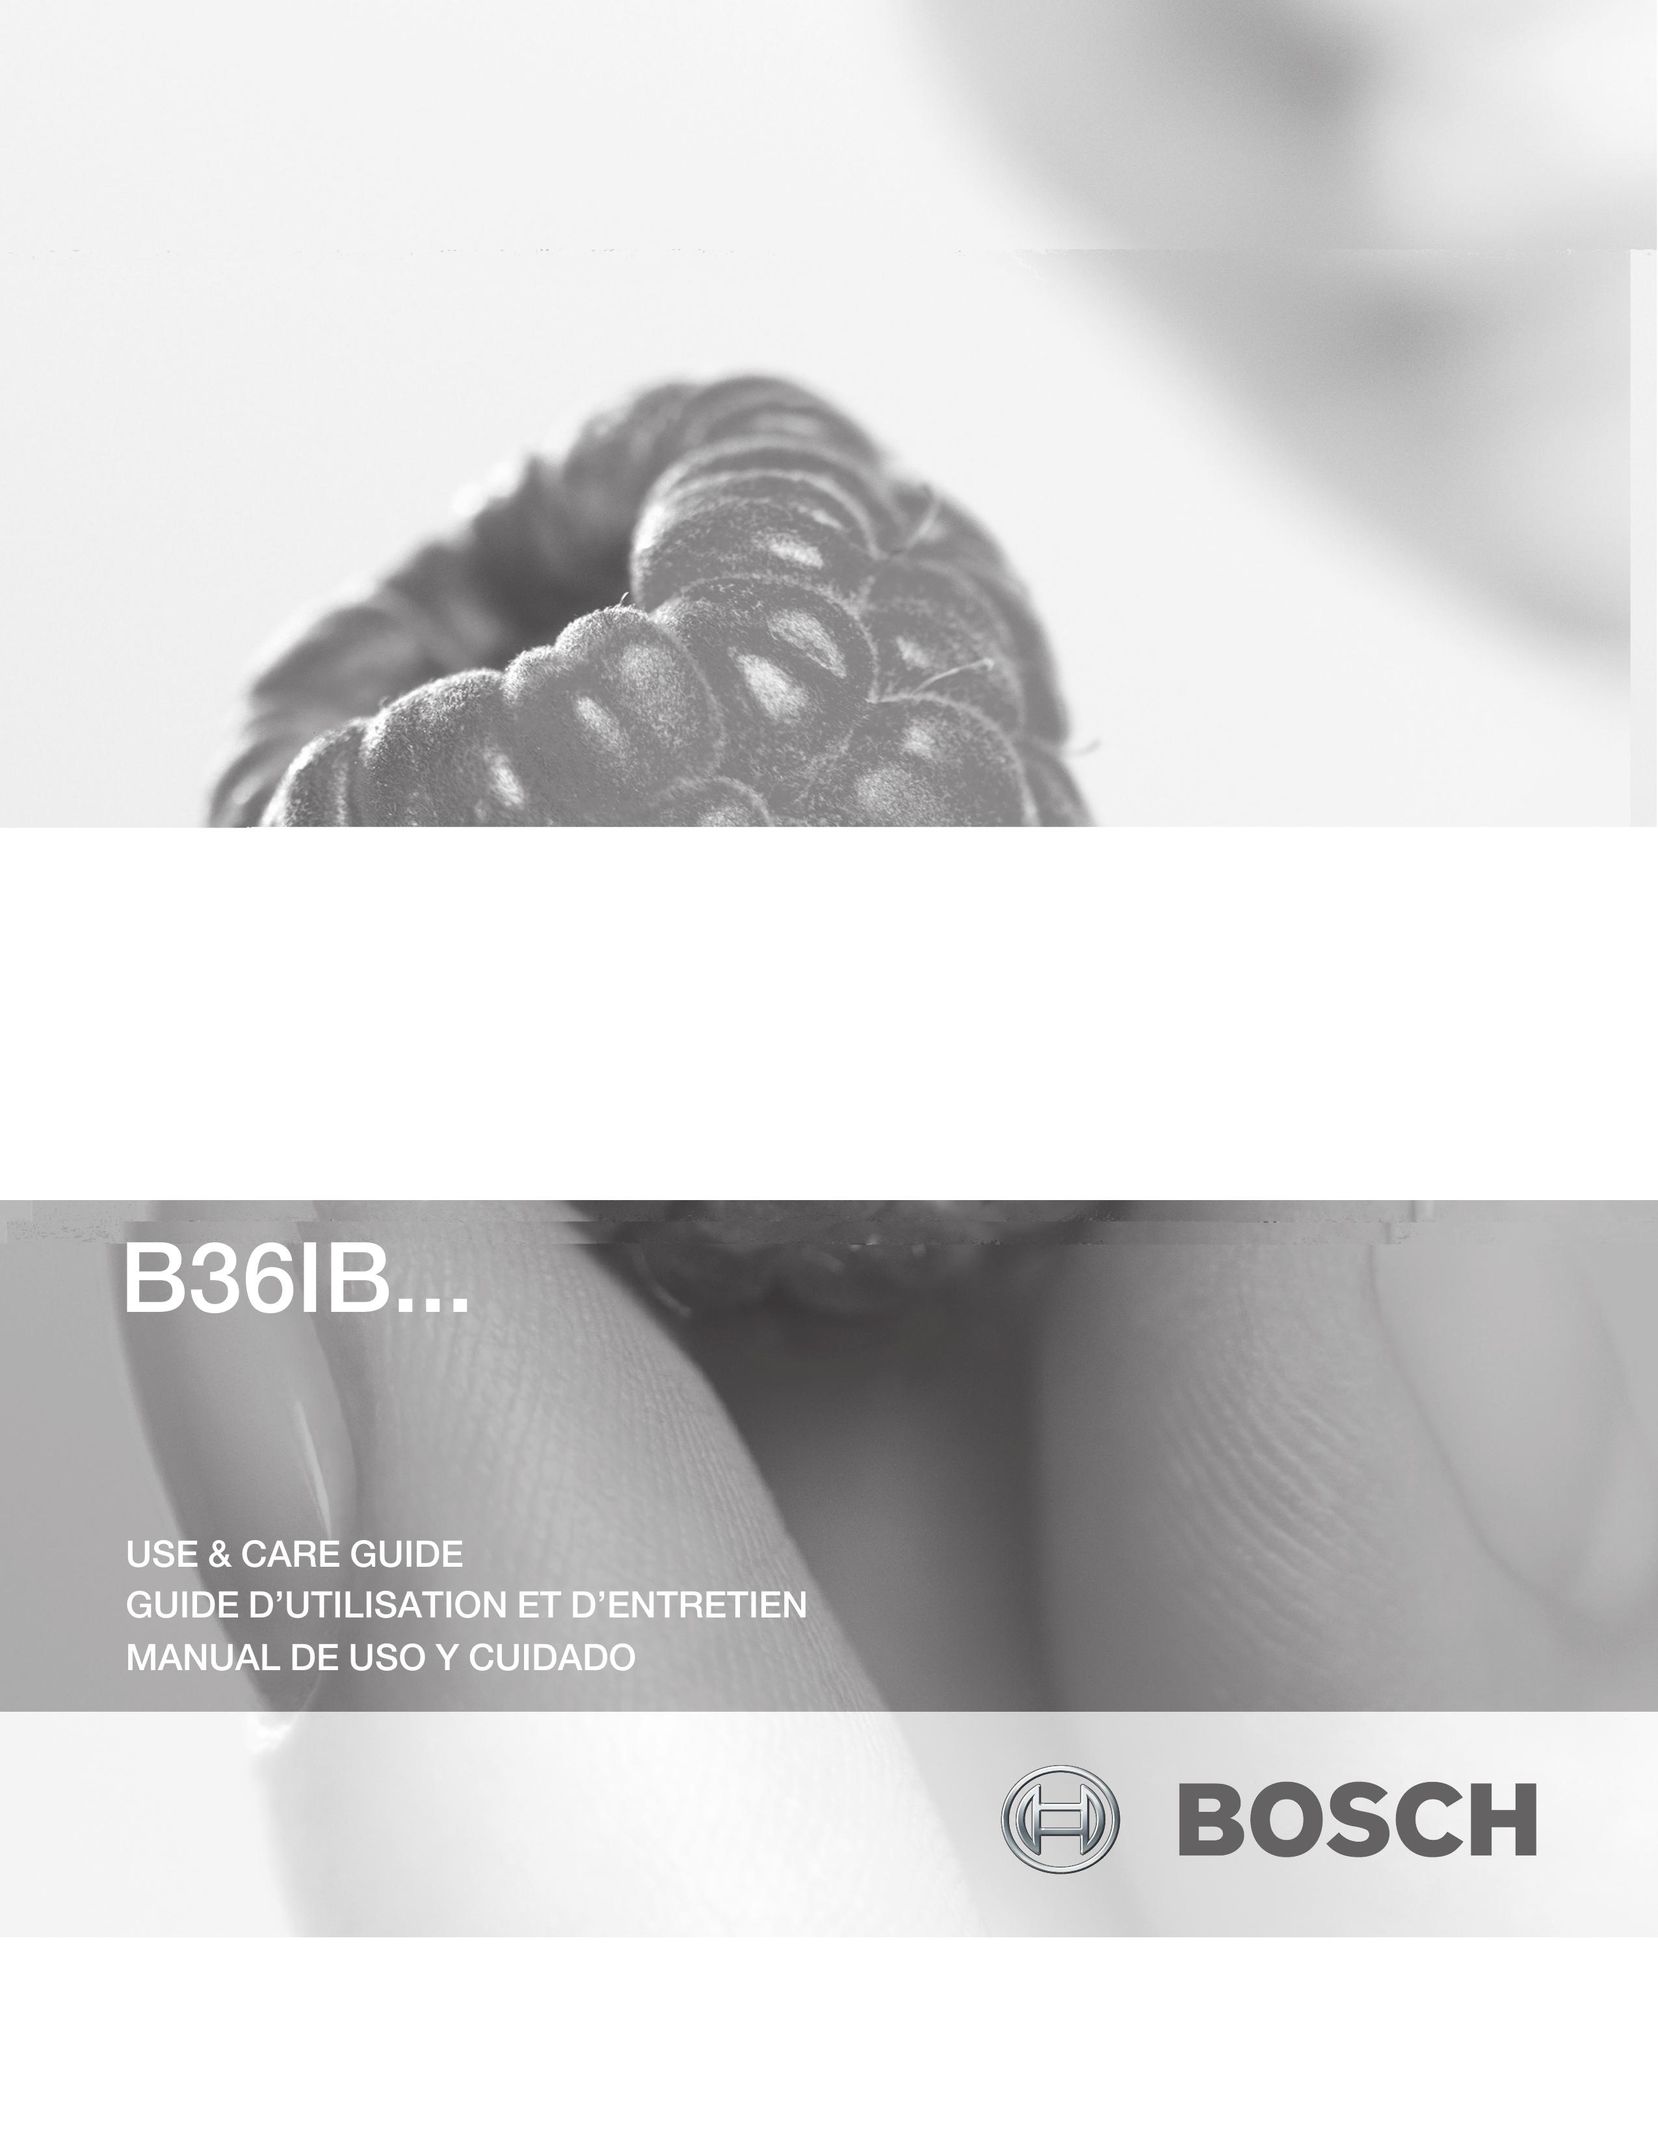 Bosch Appliances B36IB Dishwasher User Manual